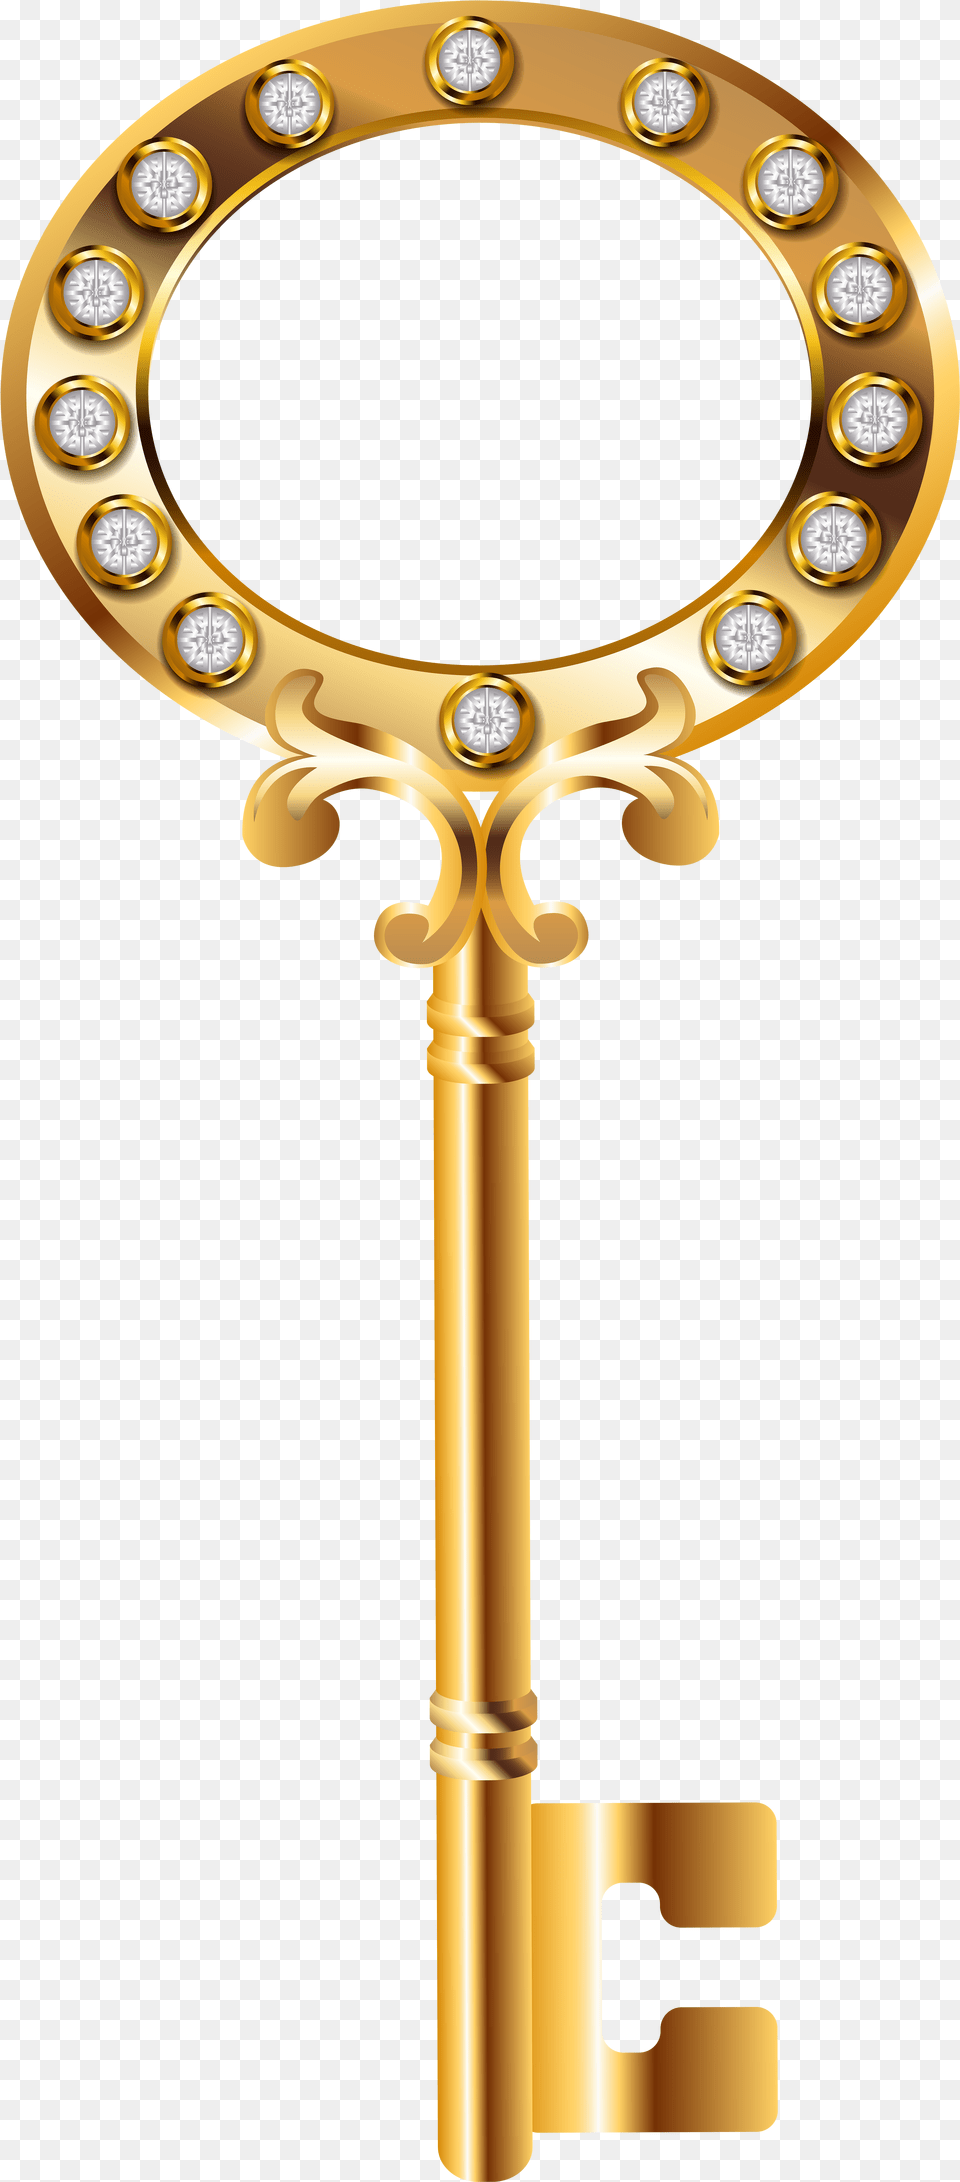 Gold Crown Keys Golden Key, Cross, Symbol Free Transparent Png